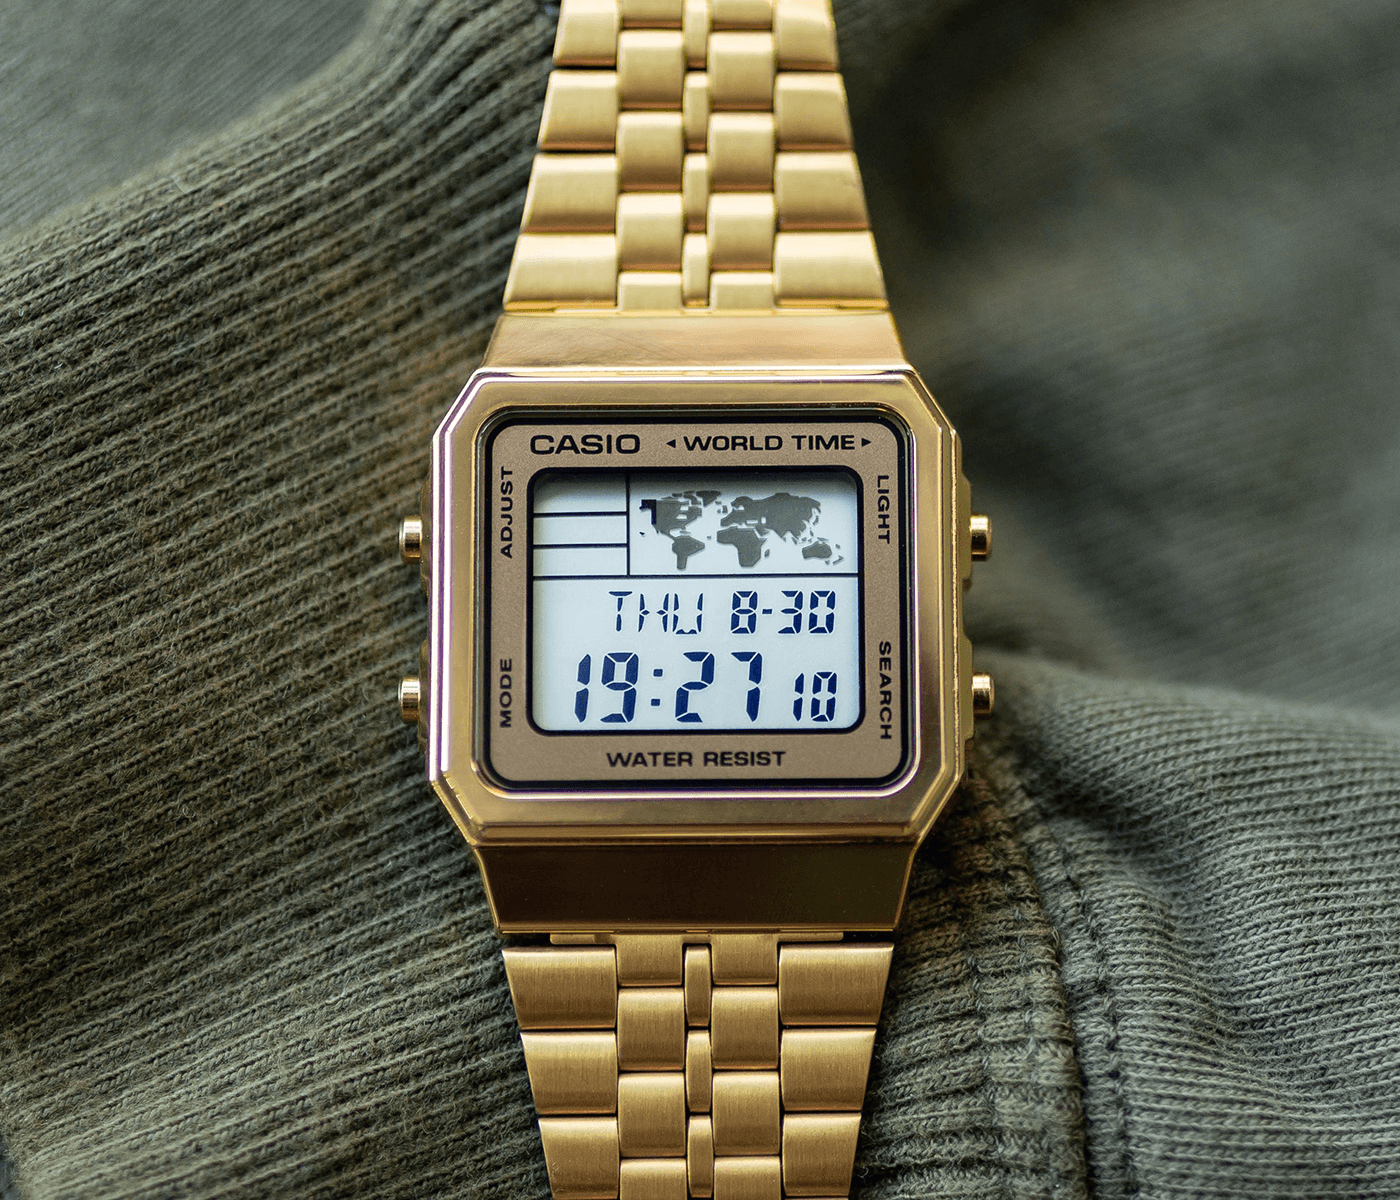 1140円 【おしゃれ】 CASIO カシオ HOTBIZ memory 200 29 time zoneメタルバンド メンズ腕時計